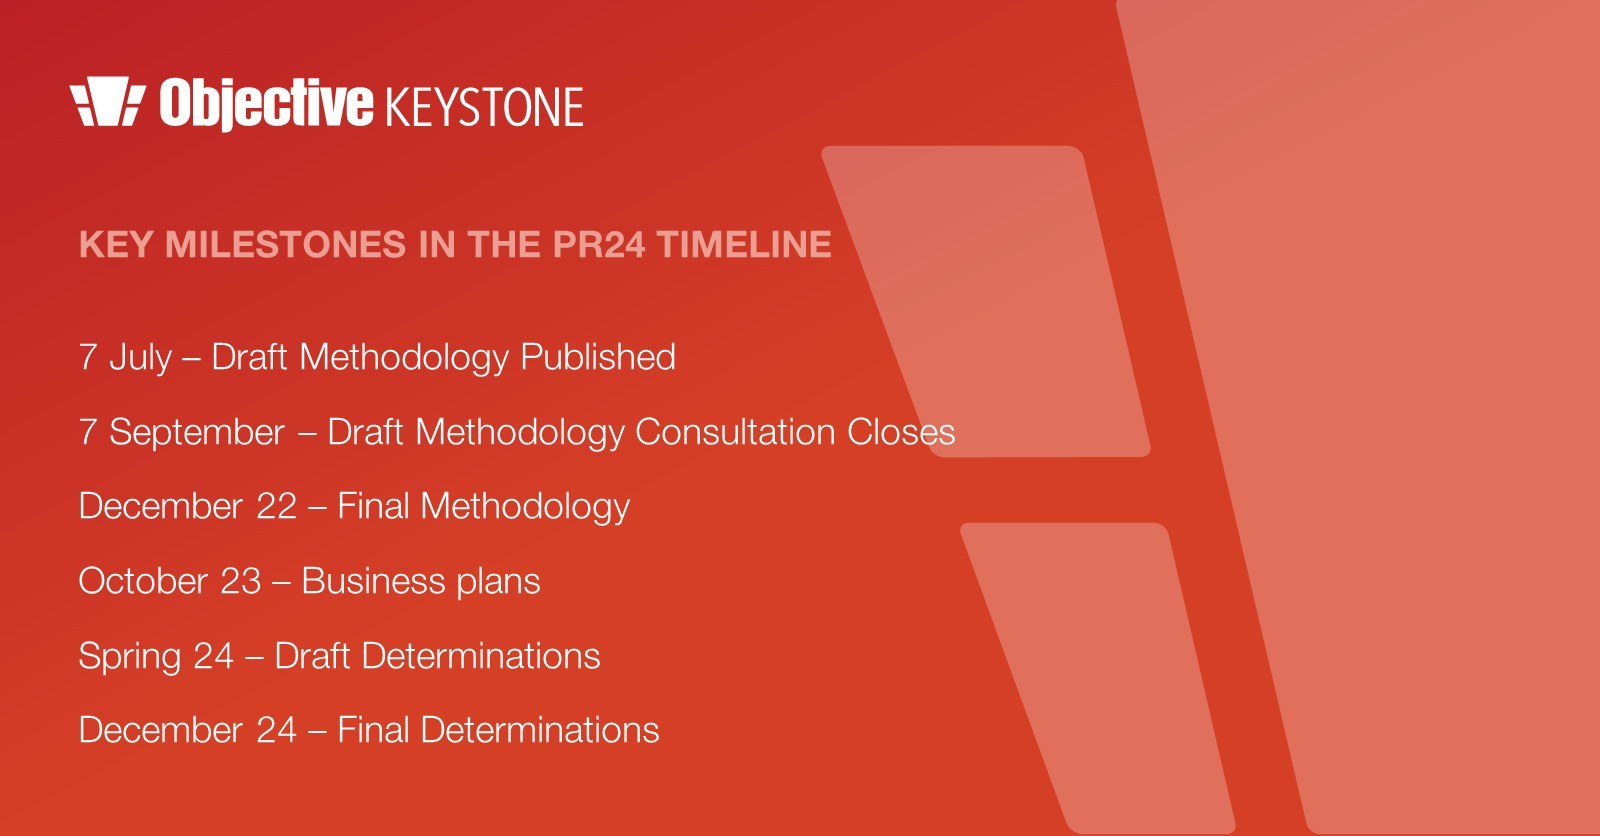 Key milestones in the PR24 timeline